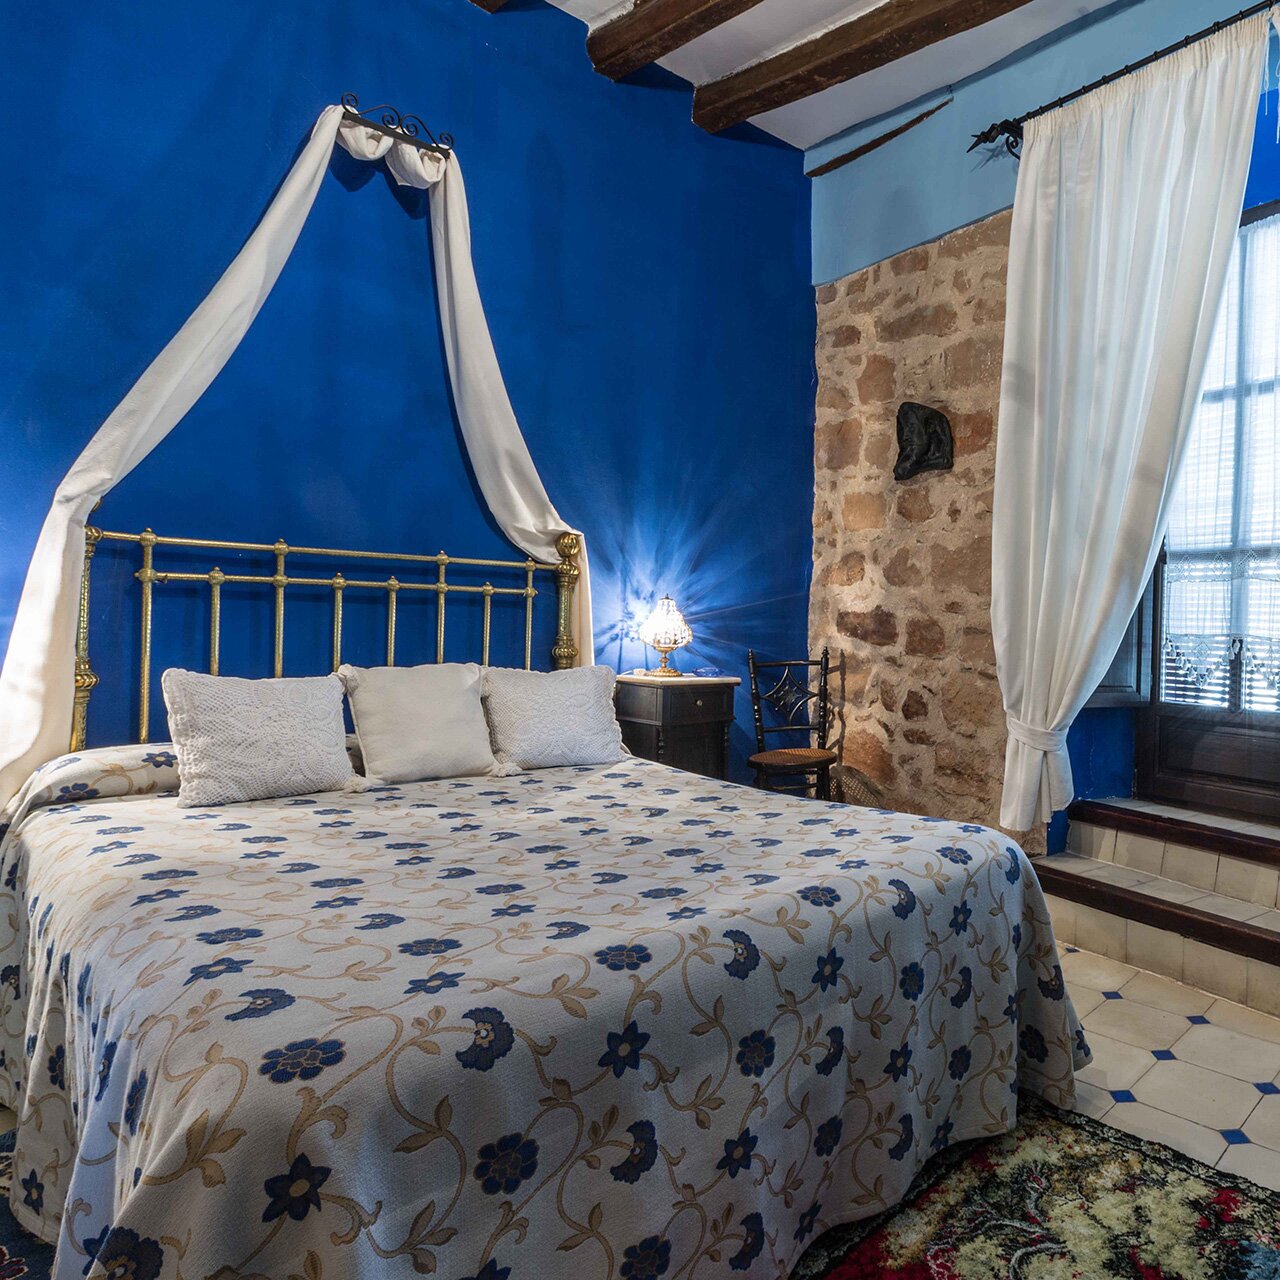 Hotel rural en Baños de la Encina (Jaén), distinguido por Turismo Andaluz como uno de los mejores Hoteles con Encanto de Andalucía http://t.co/QDXHuDfrU5